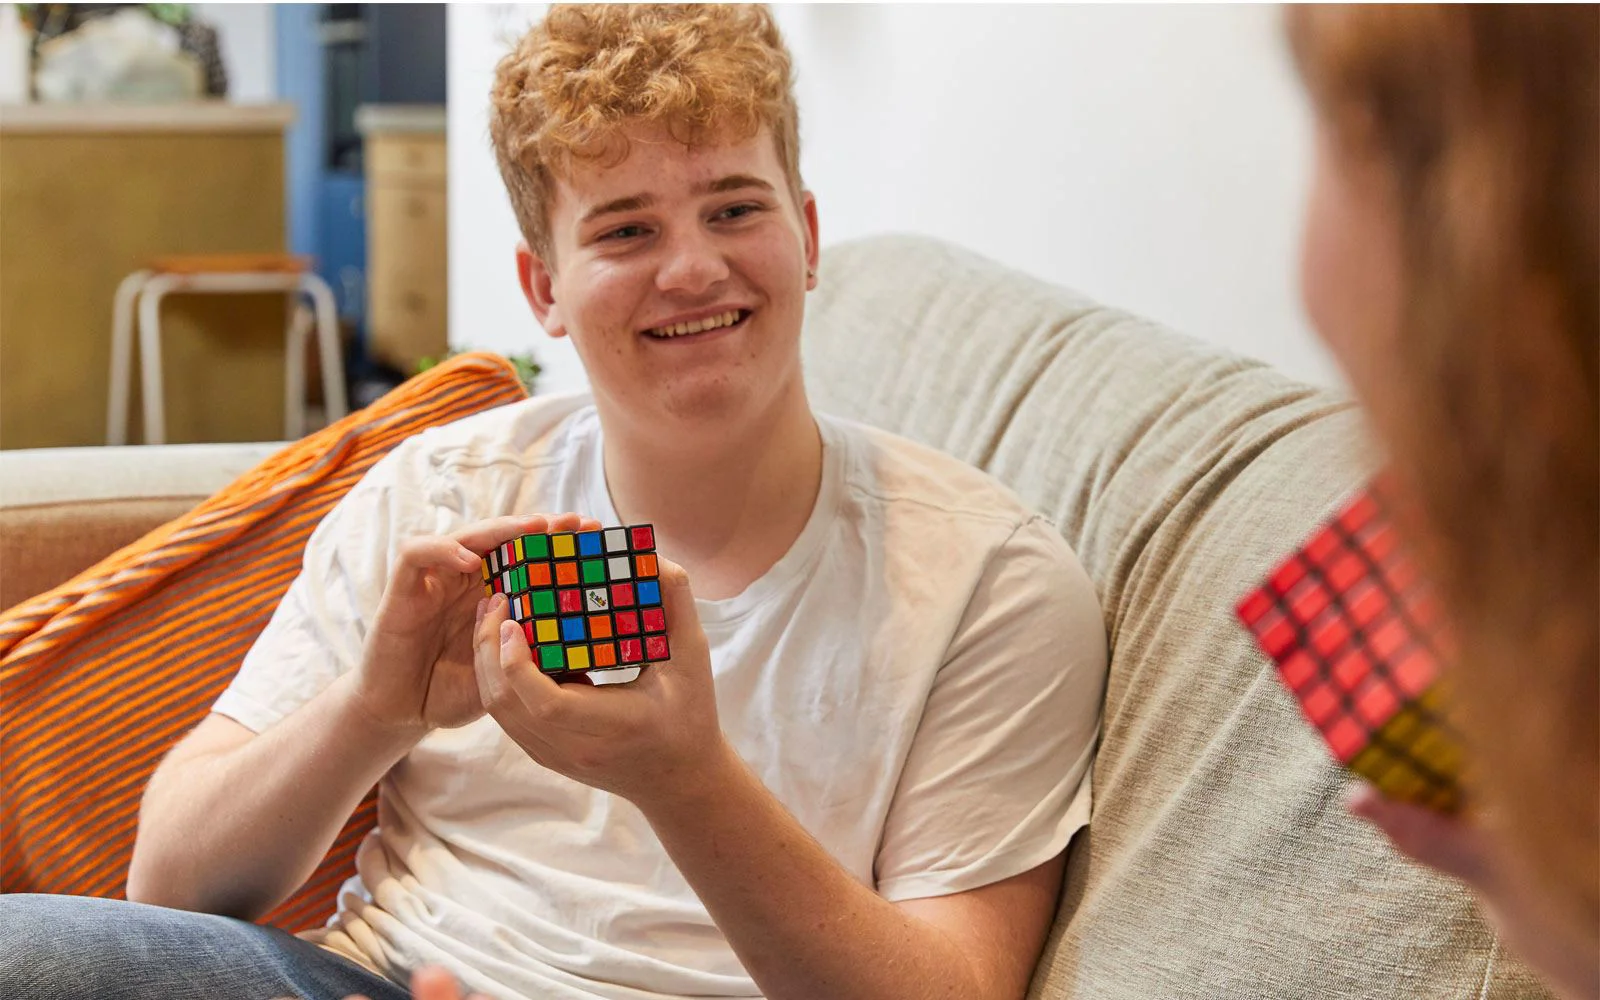 Jucarie Rubiks Cub, 5 x 5